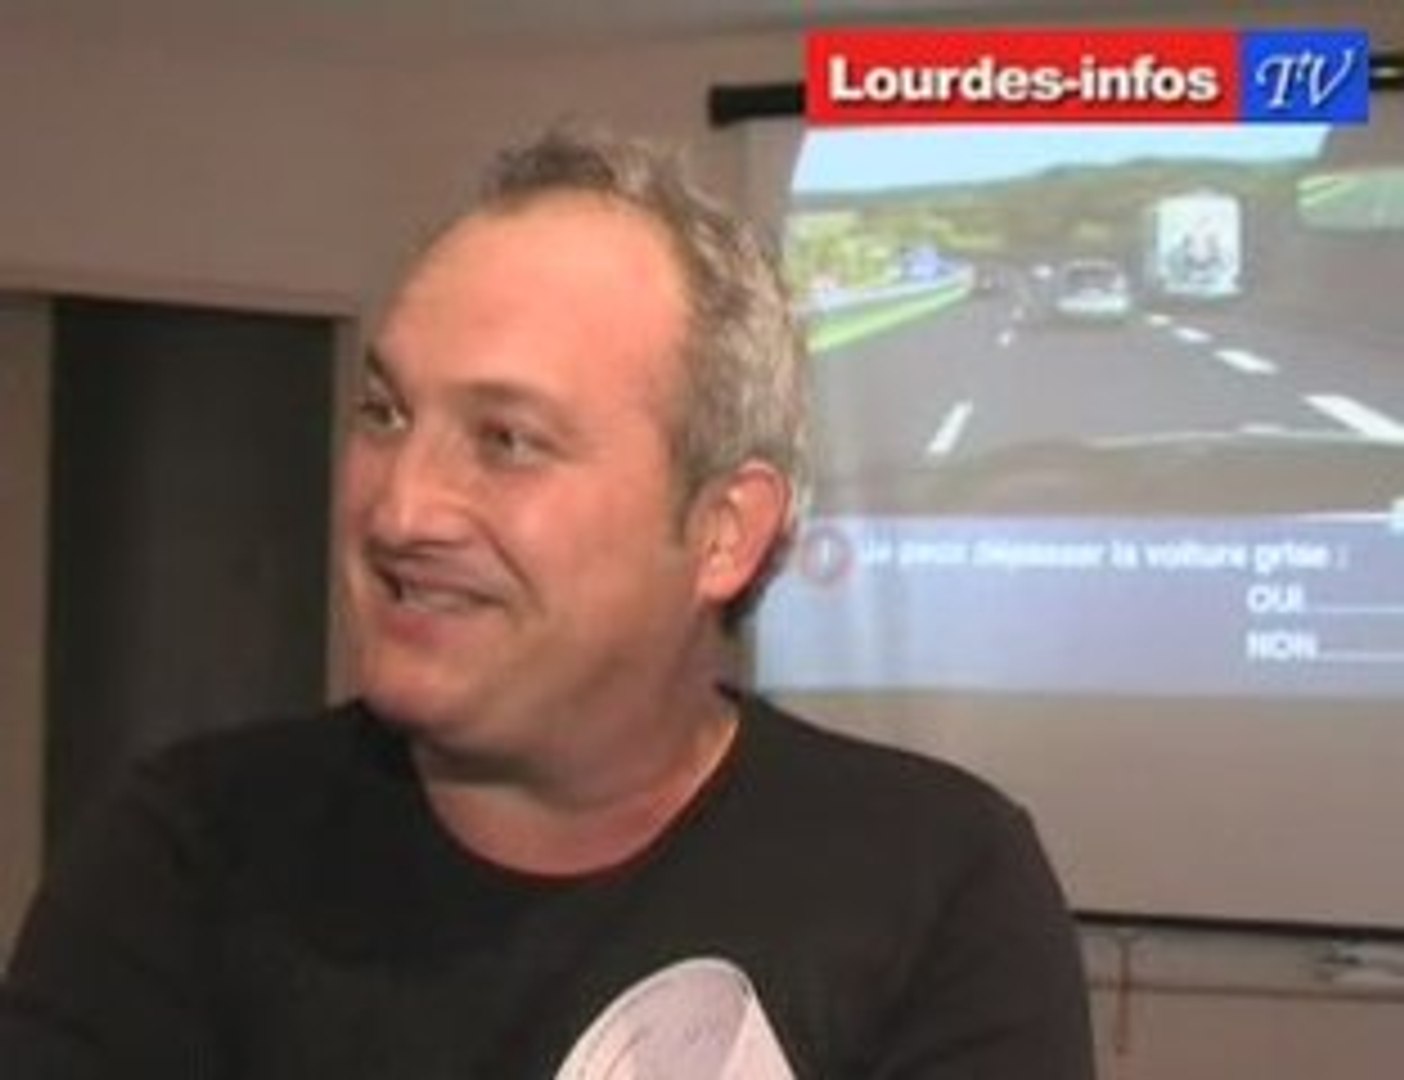 Lourdes : L'auto-école Feu Vert récupération de vos points - Vidéo  Dailymotion